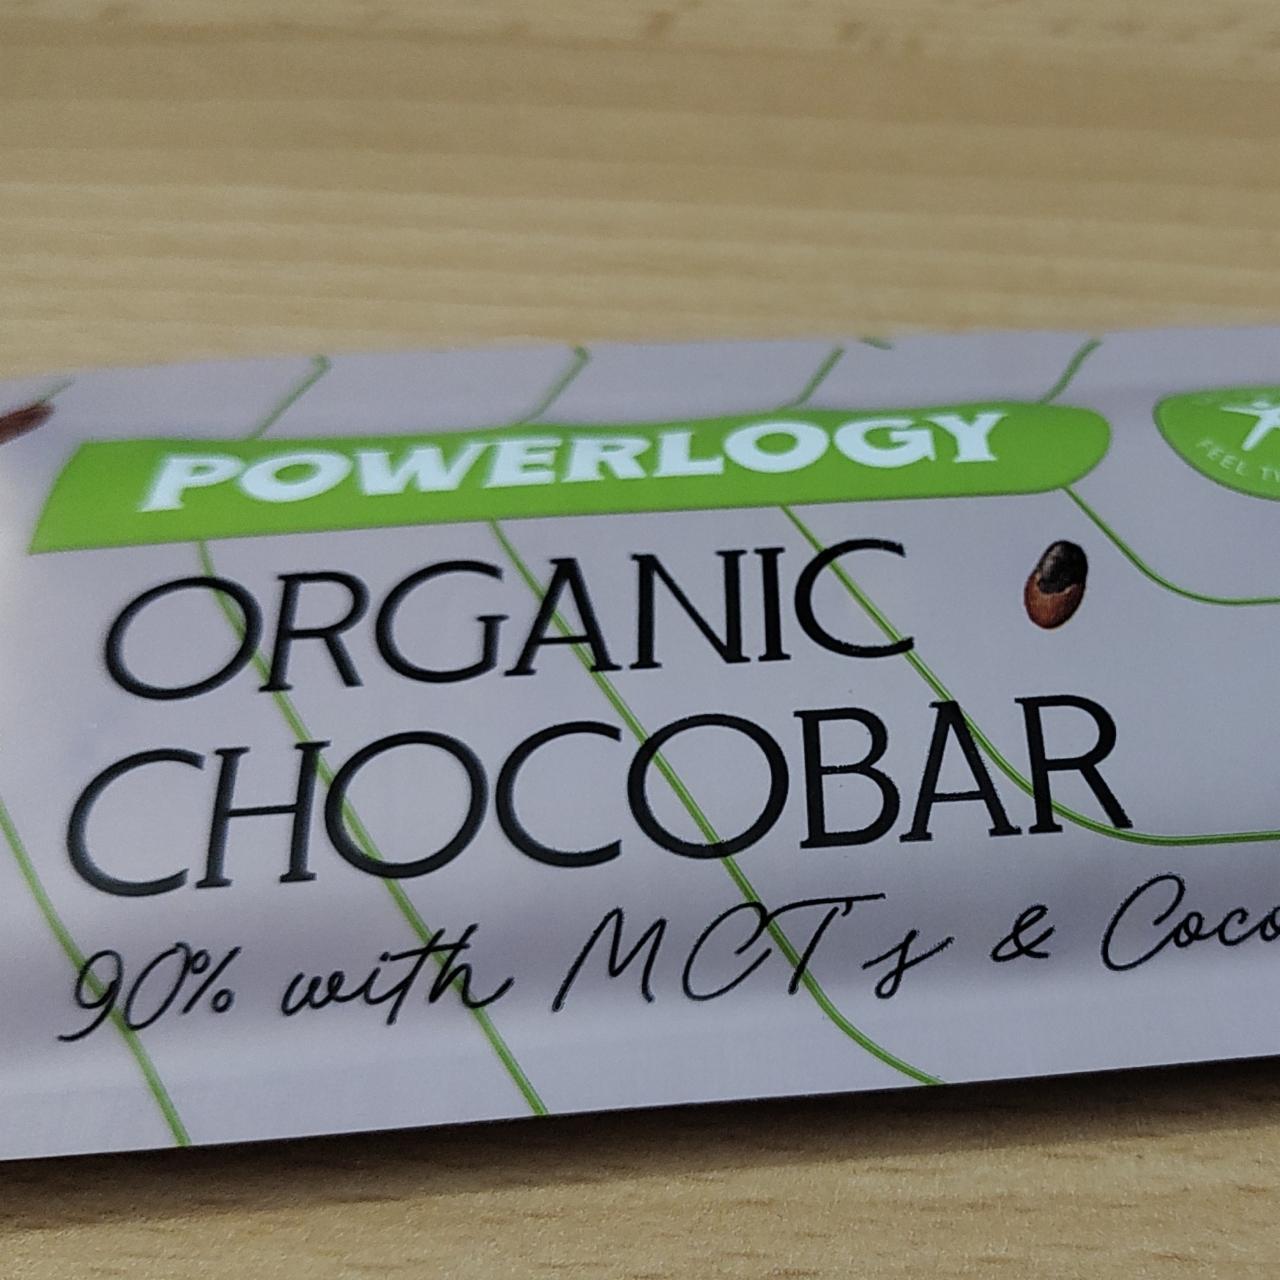 Fotografie - Organic Chocobar 90% Powerlogy